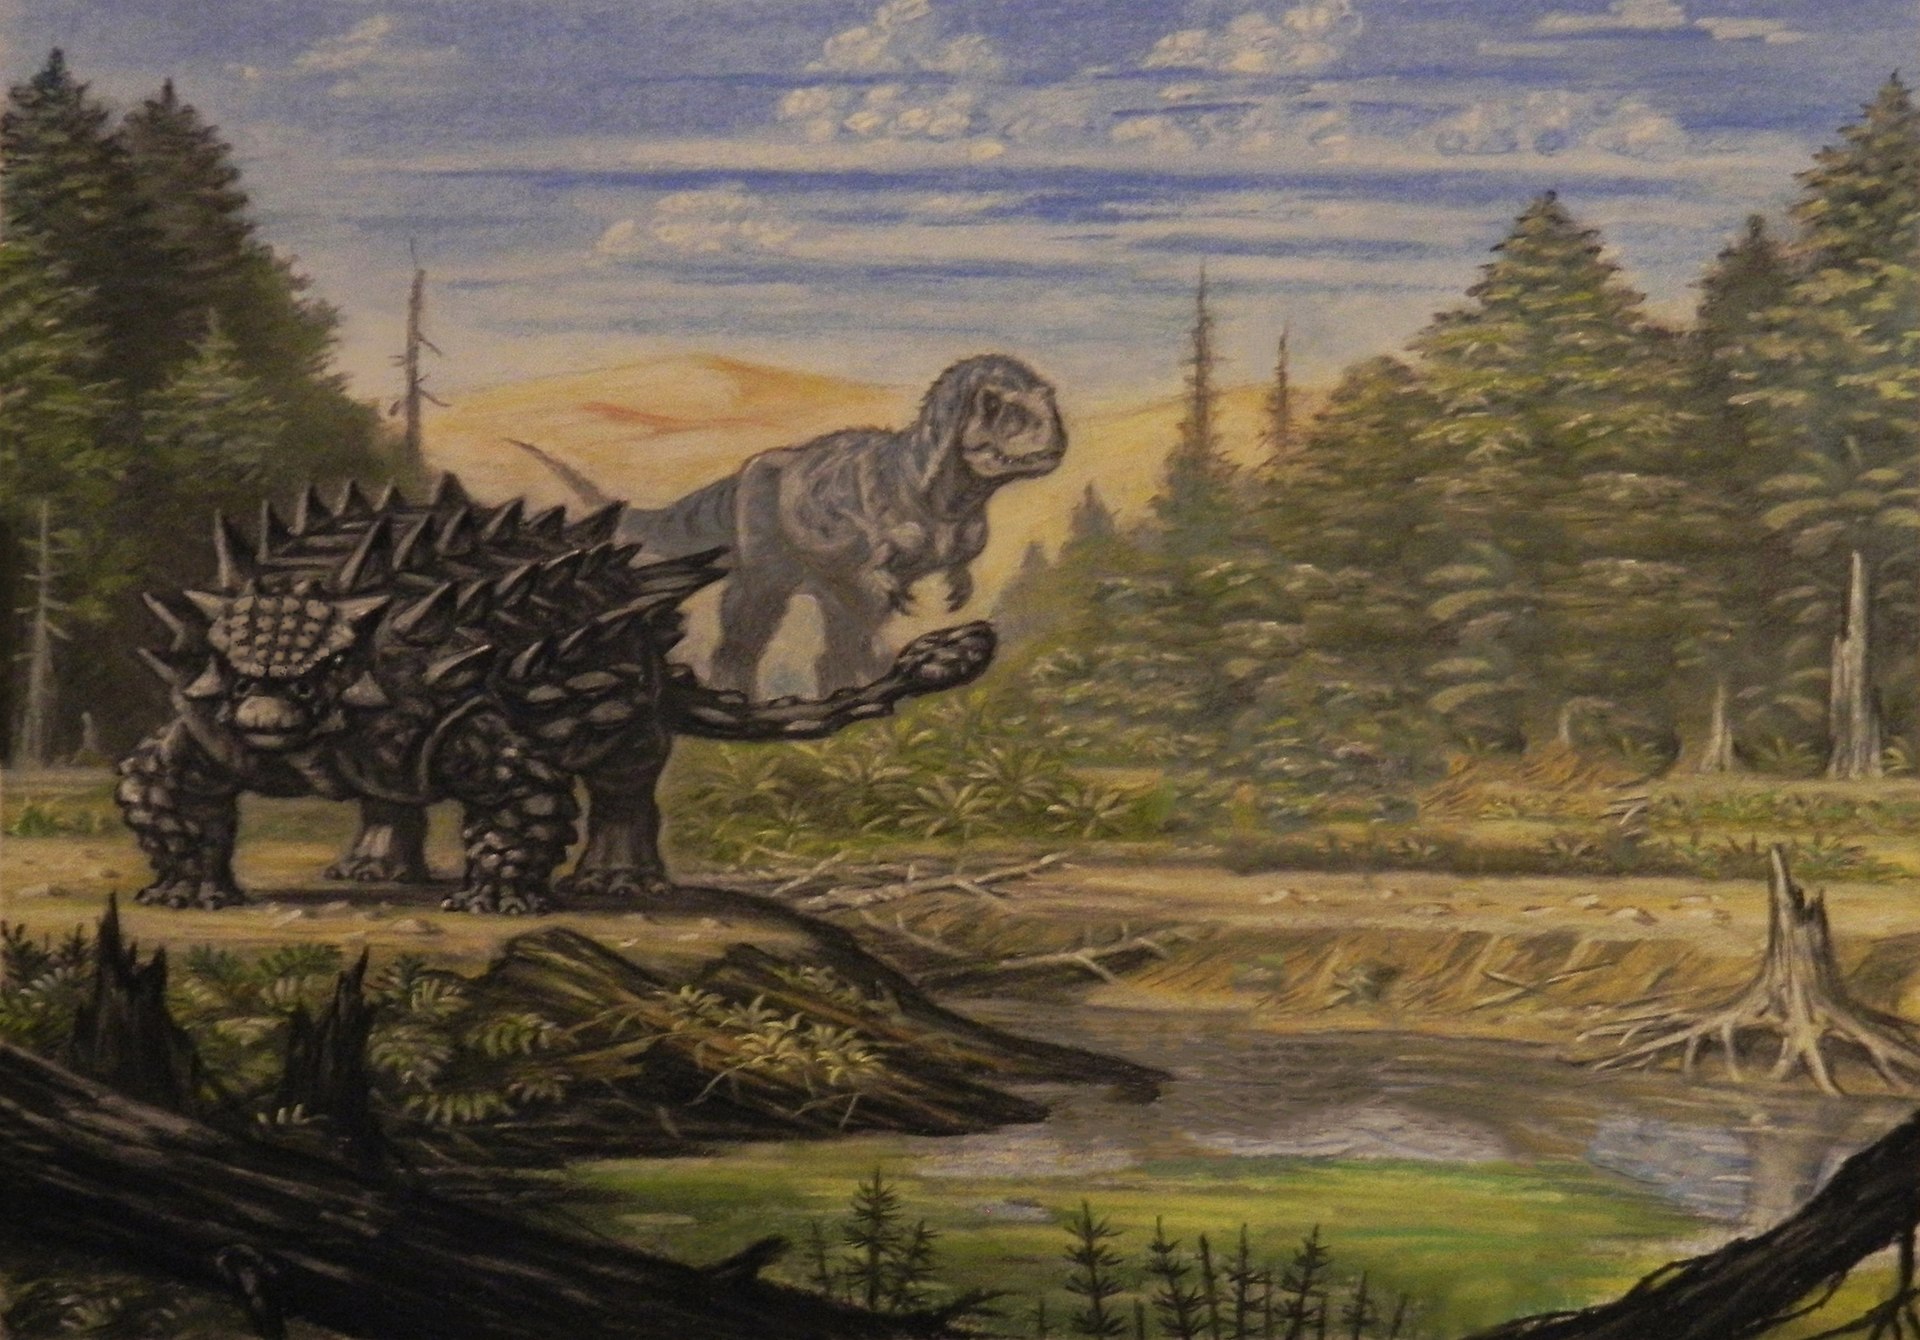 Rekonstrukce ekosystému pozdně křídového souvrství Nemegt na území současného Mongolska. V době před asi 70 miliony let zde existovala pestrá společenstva dinosaurů, jako byl obrněný ankylosaurid Saichania chulsanensis (v popředí) nebo obří tyranosau